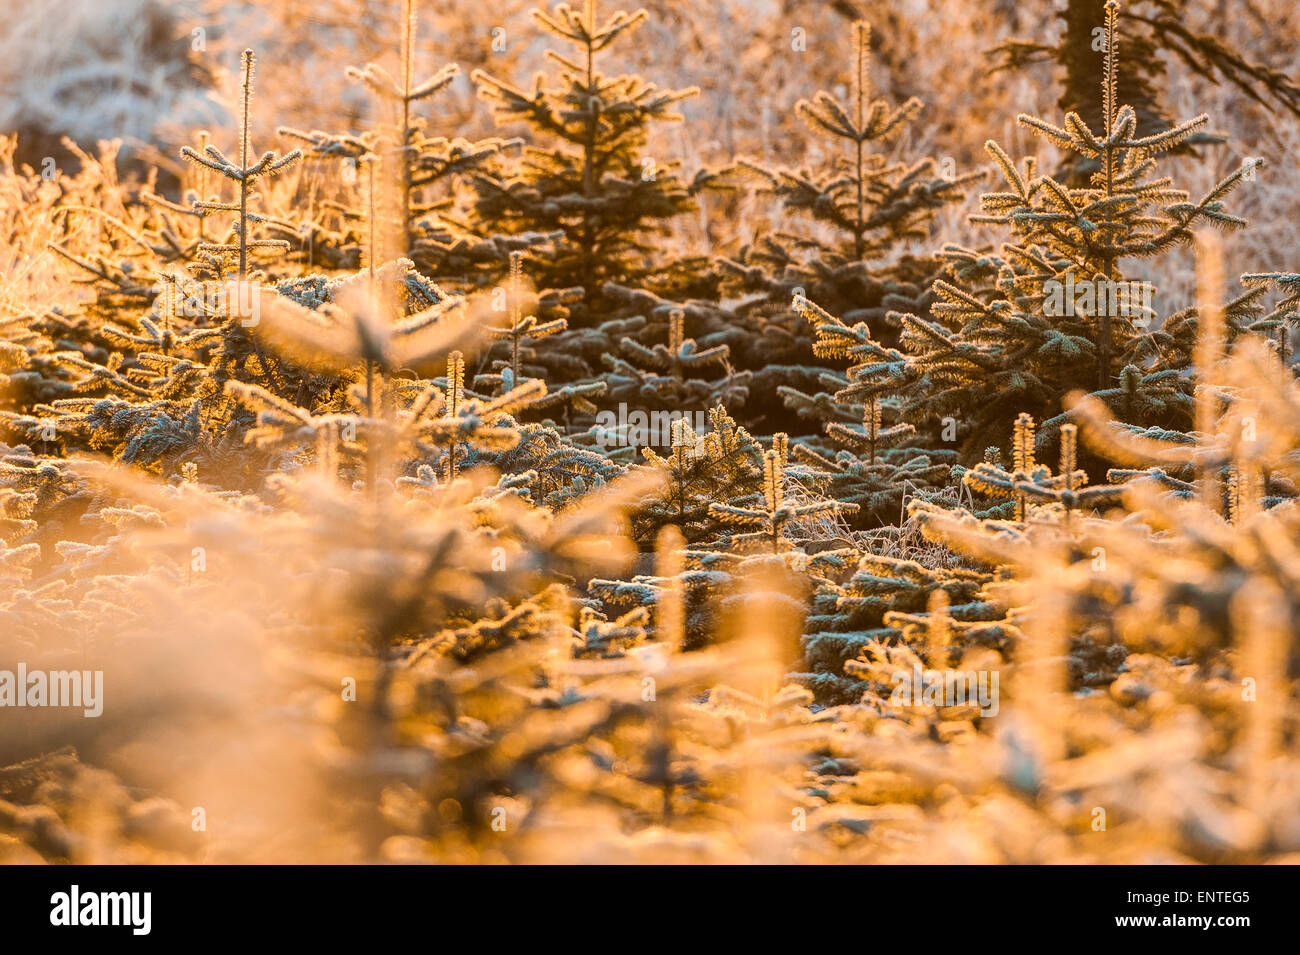 Frost couverts d'arbres de Noël l'épicéa de Sitka en Écosse dans une scène d'hiver Banque D'Images